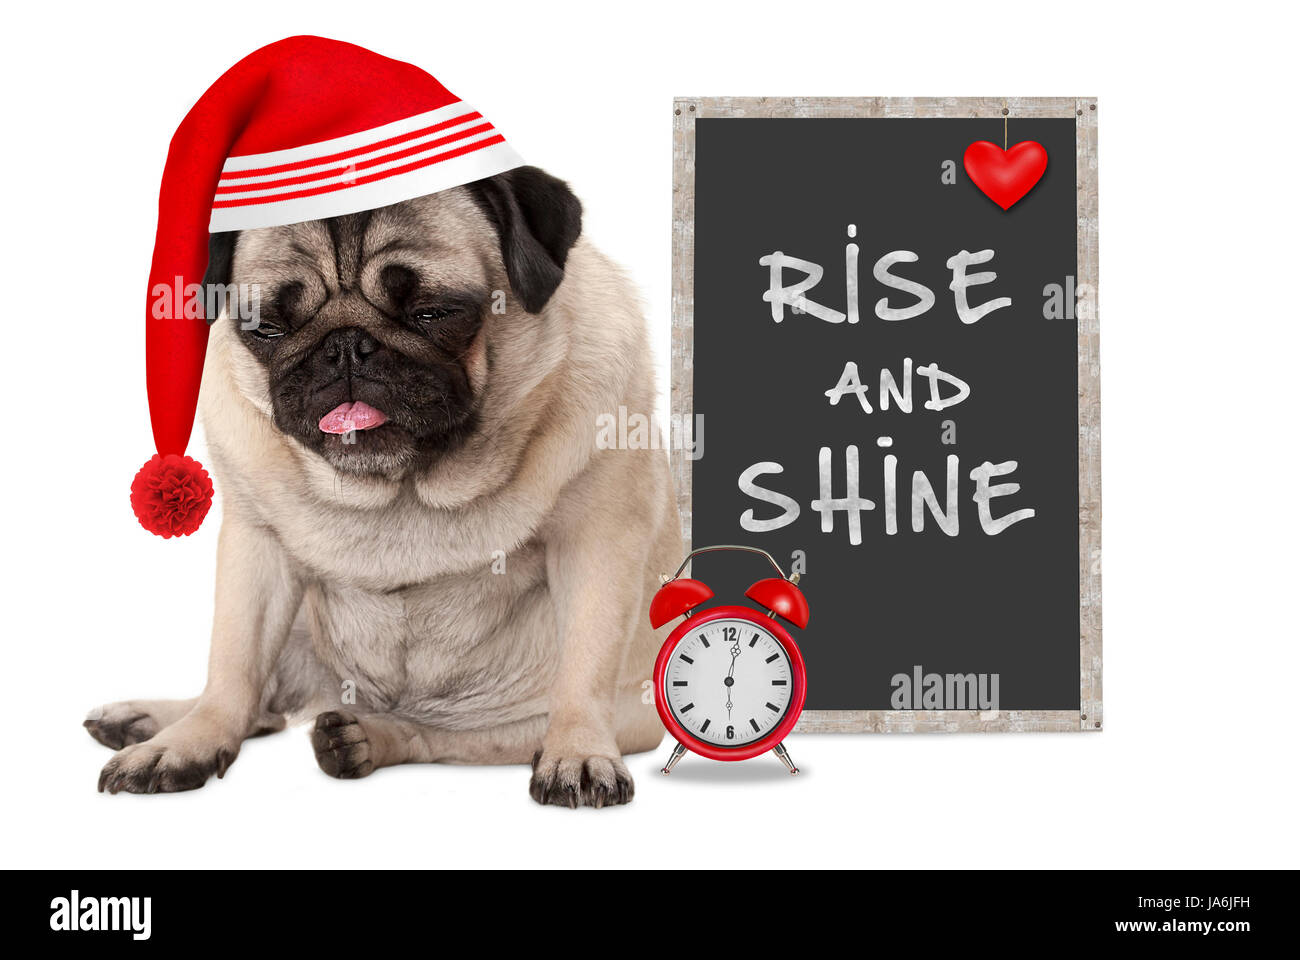 Se lever tôt le matin, pug grincheux puppy dog with red cap sommeil, réveil et signer avec texte Rise and Shine, isolé sur fond blanc Banque D'Images